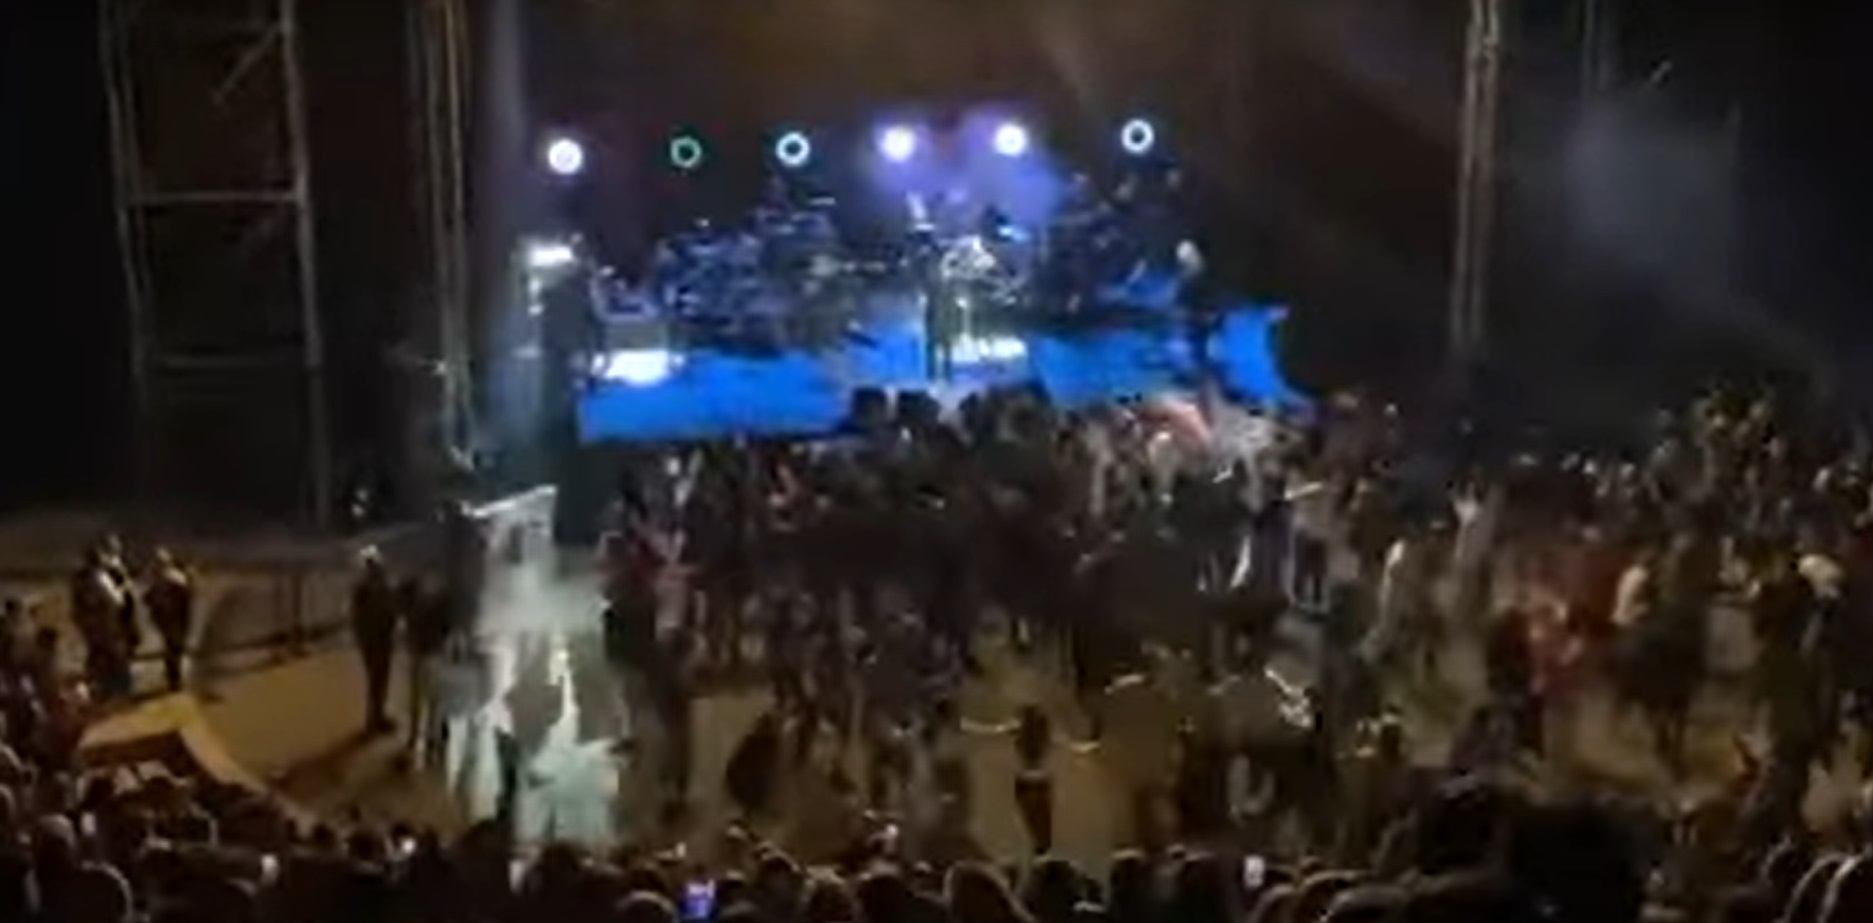 Θεσσαλονίκη: "Περίπατο πήγαν" τα μέτρα για τον κορωνοϊό στη συναυλία του Γιάννη Πάριου - Διαμαρτυρία dj για το mini lockdown